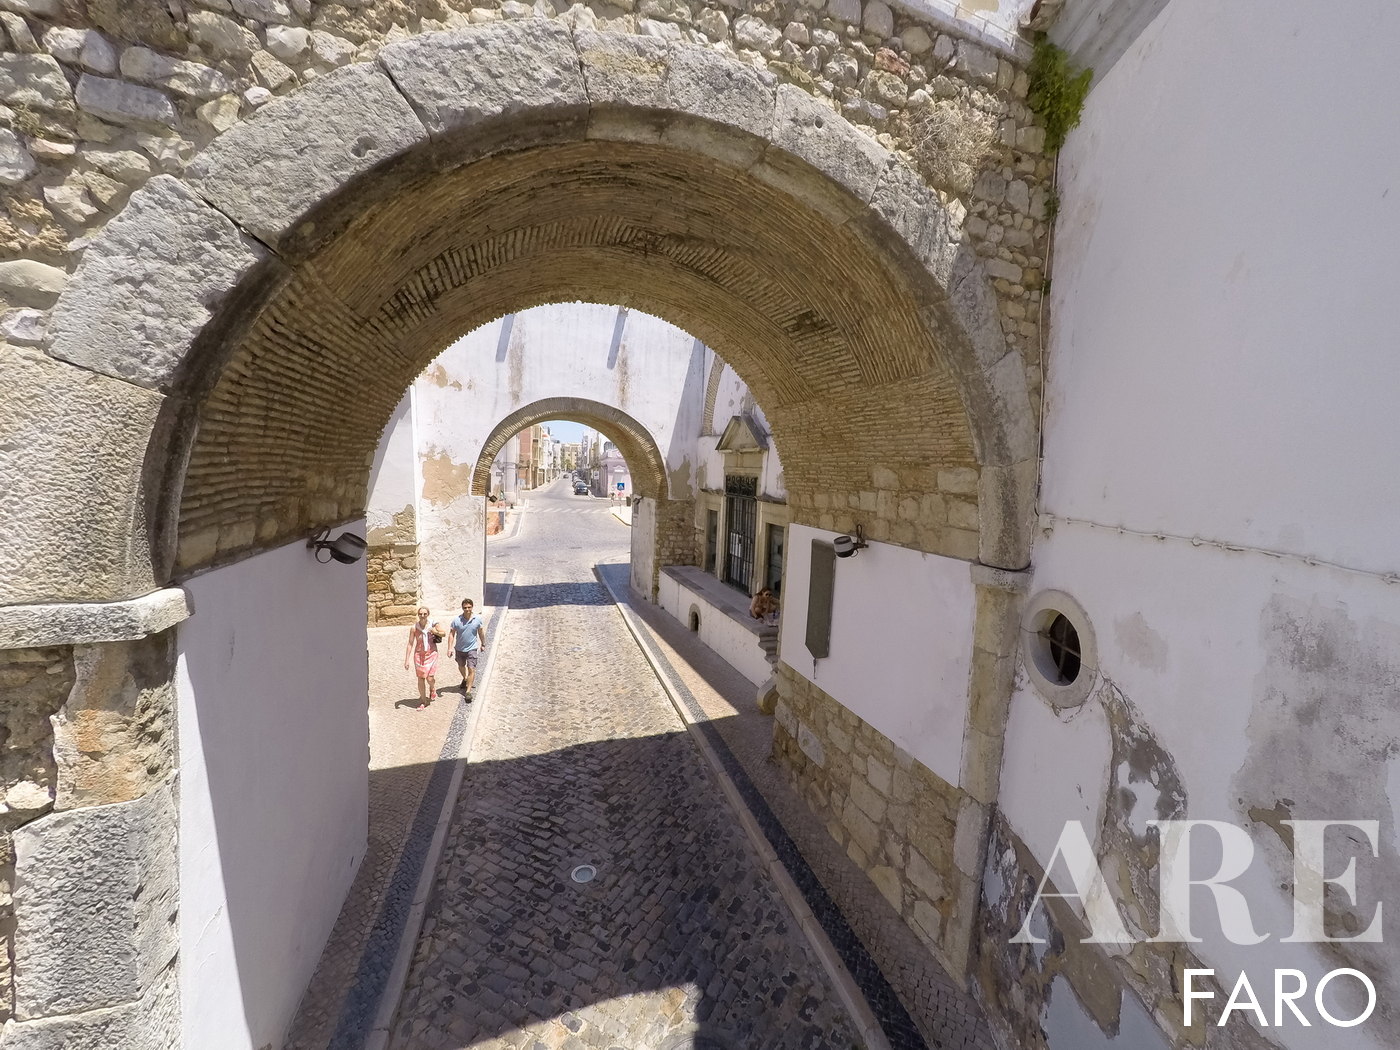 Arcos del casco antiguo de Faro. Aquí podemos adentrarnos en la ciudad y pasear por el casco antiguo. Hay varios restaurantes y áreas de servicio.